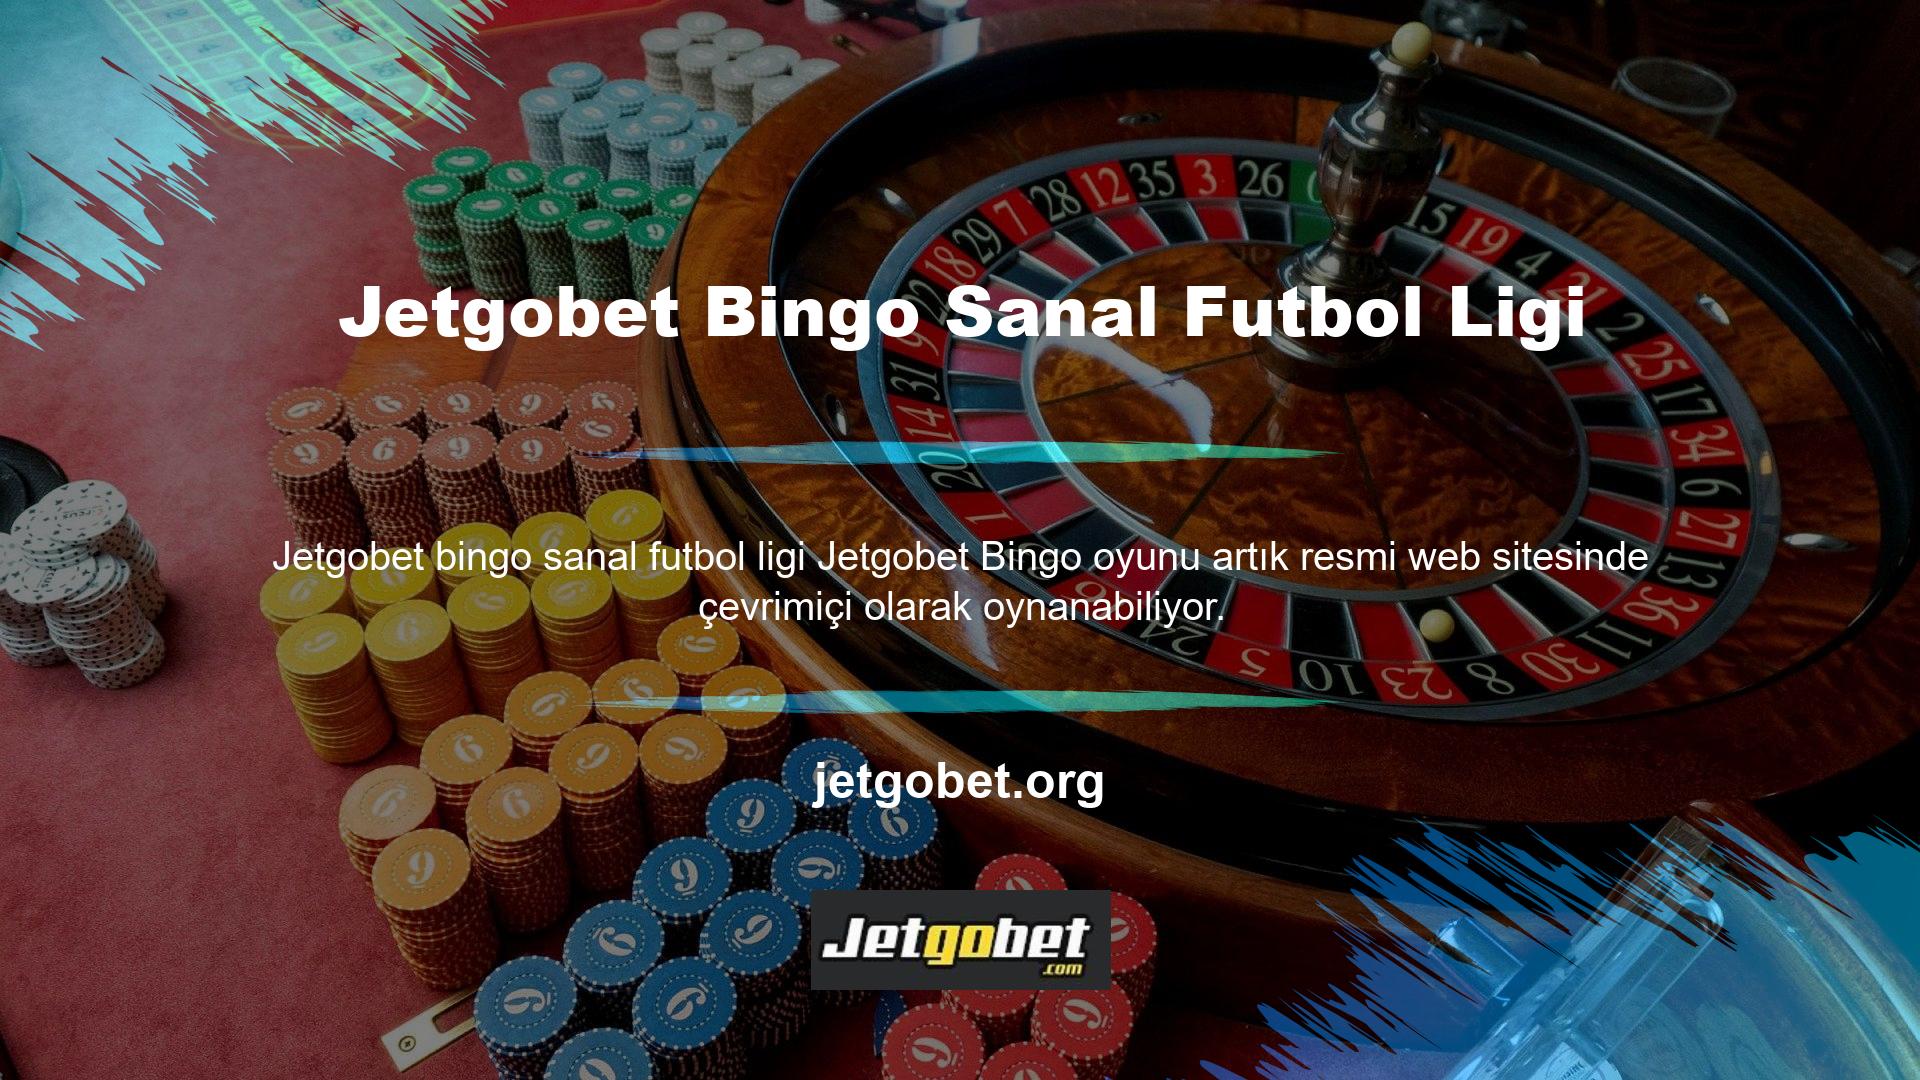 Jetgobet Bingo Sanal Futbol Ligi Bingoya katılmak çok kolaydır